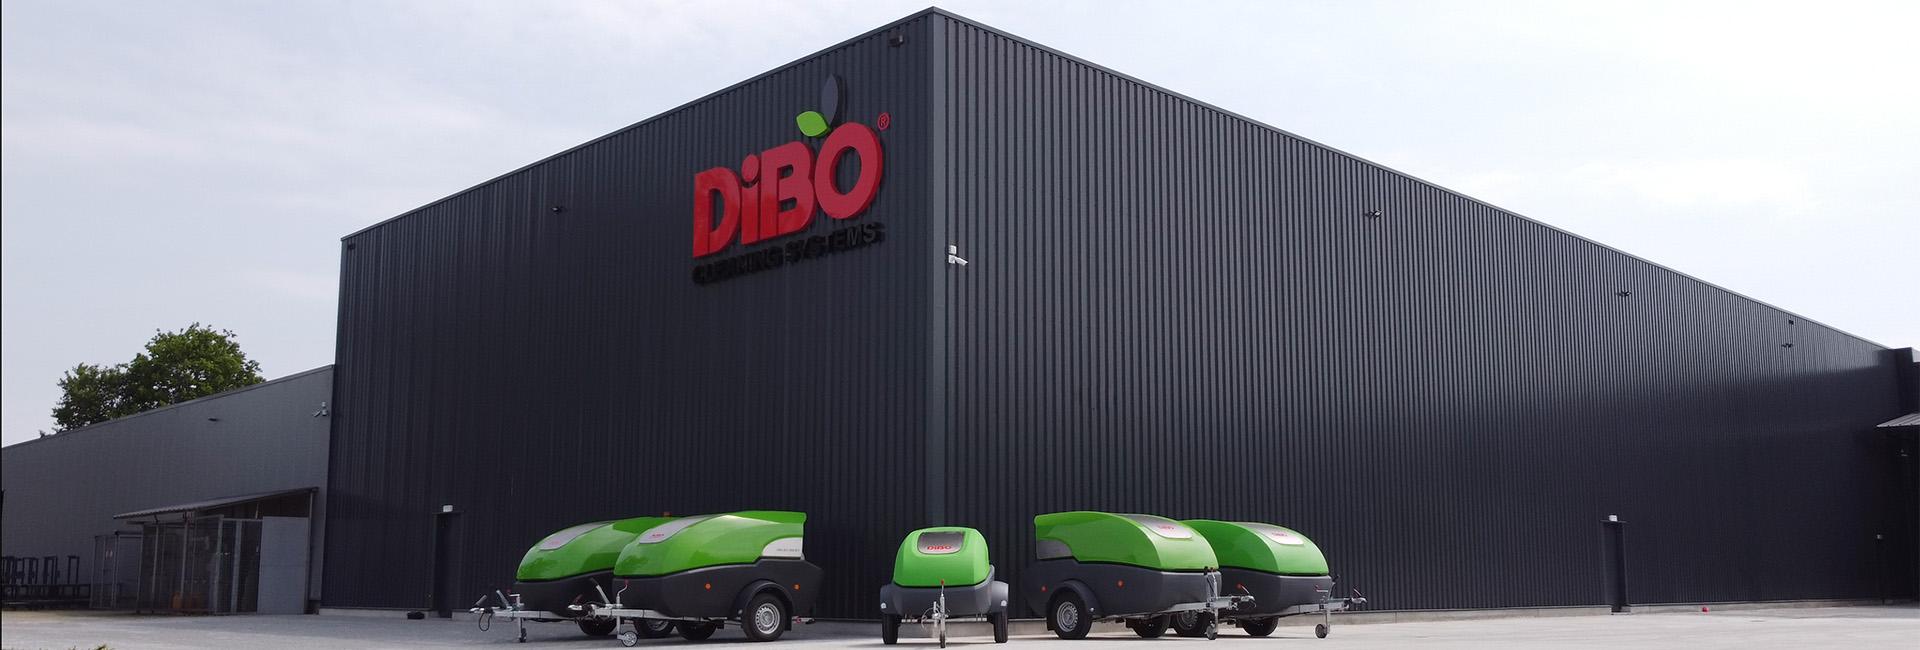 DiBO-Hochdruckanhänger zum Transport aufgereiht 